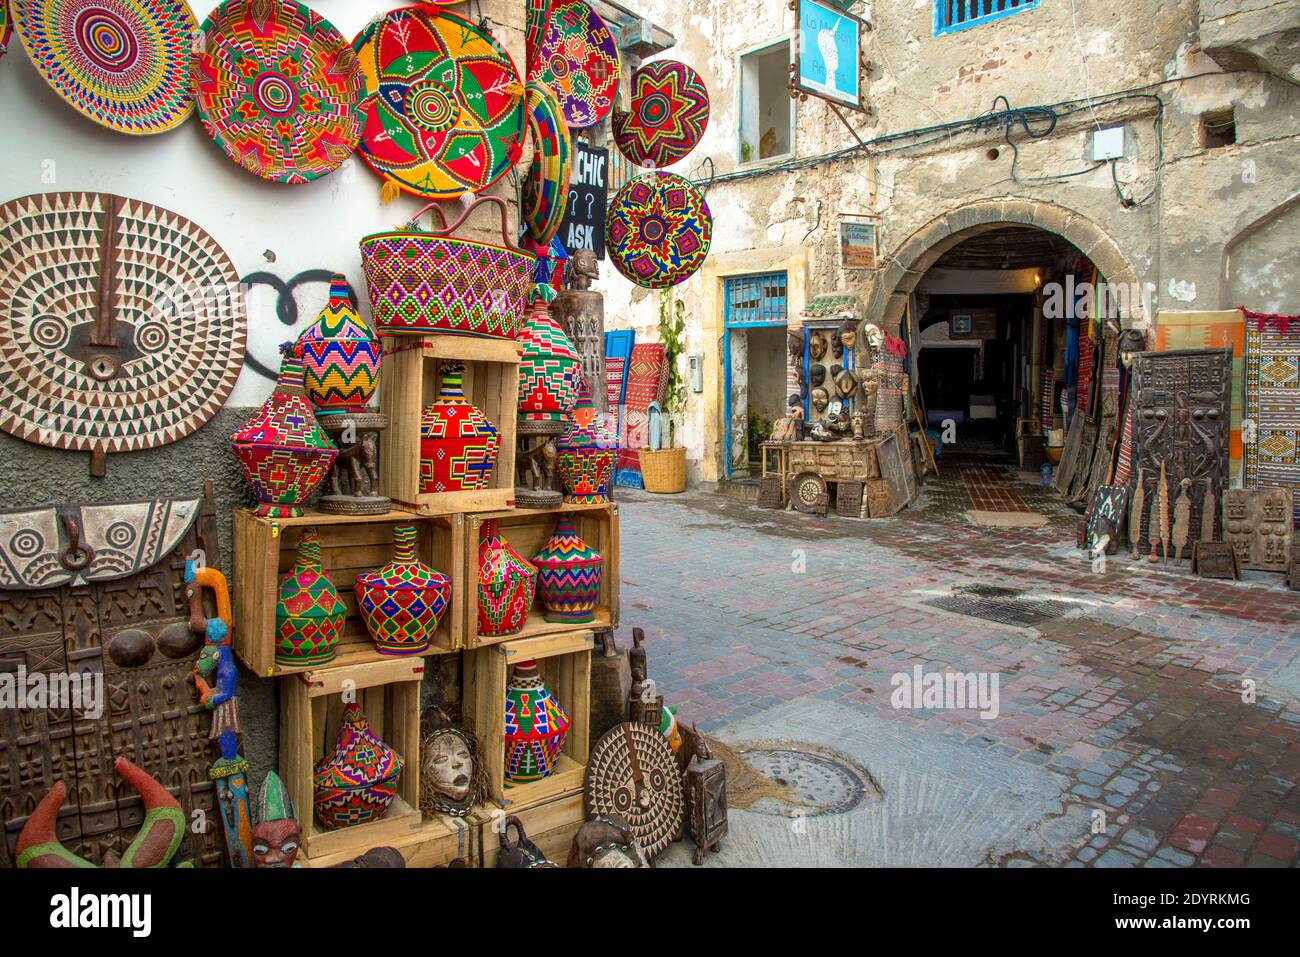 Mercato a Essaouira, Maroc Foto Stock